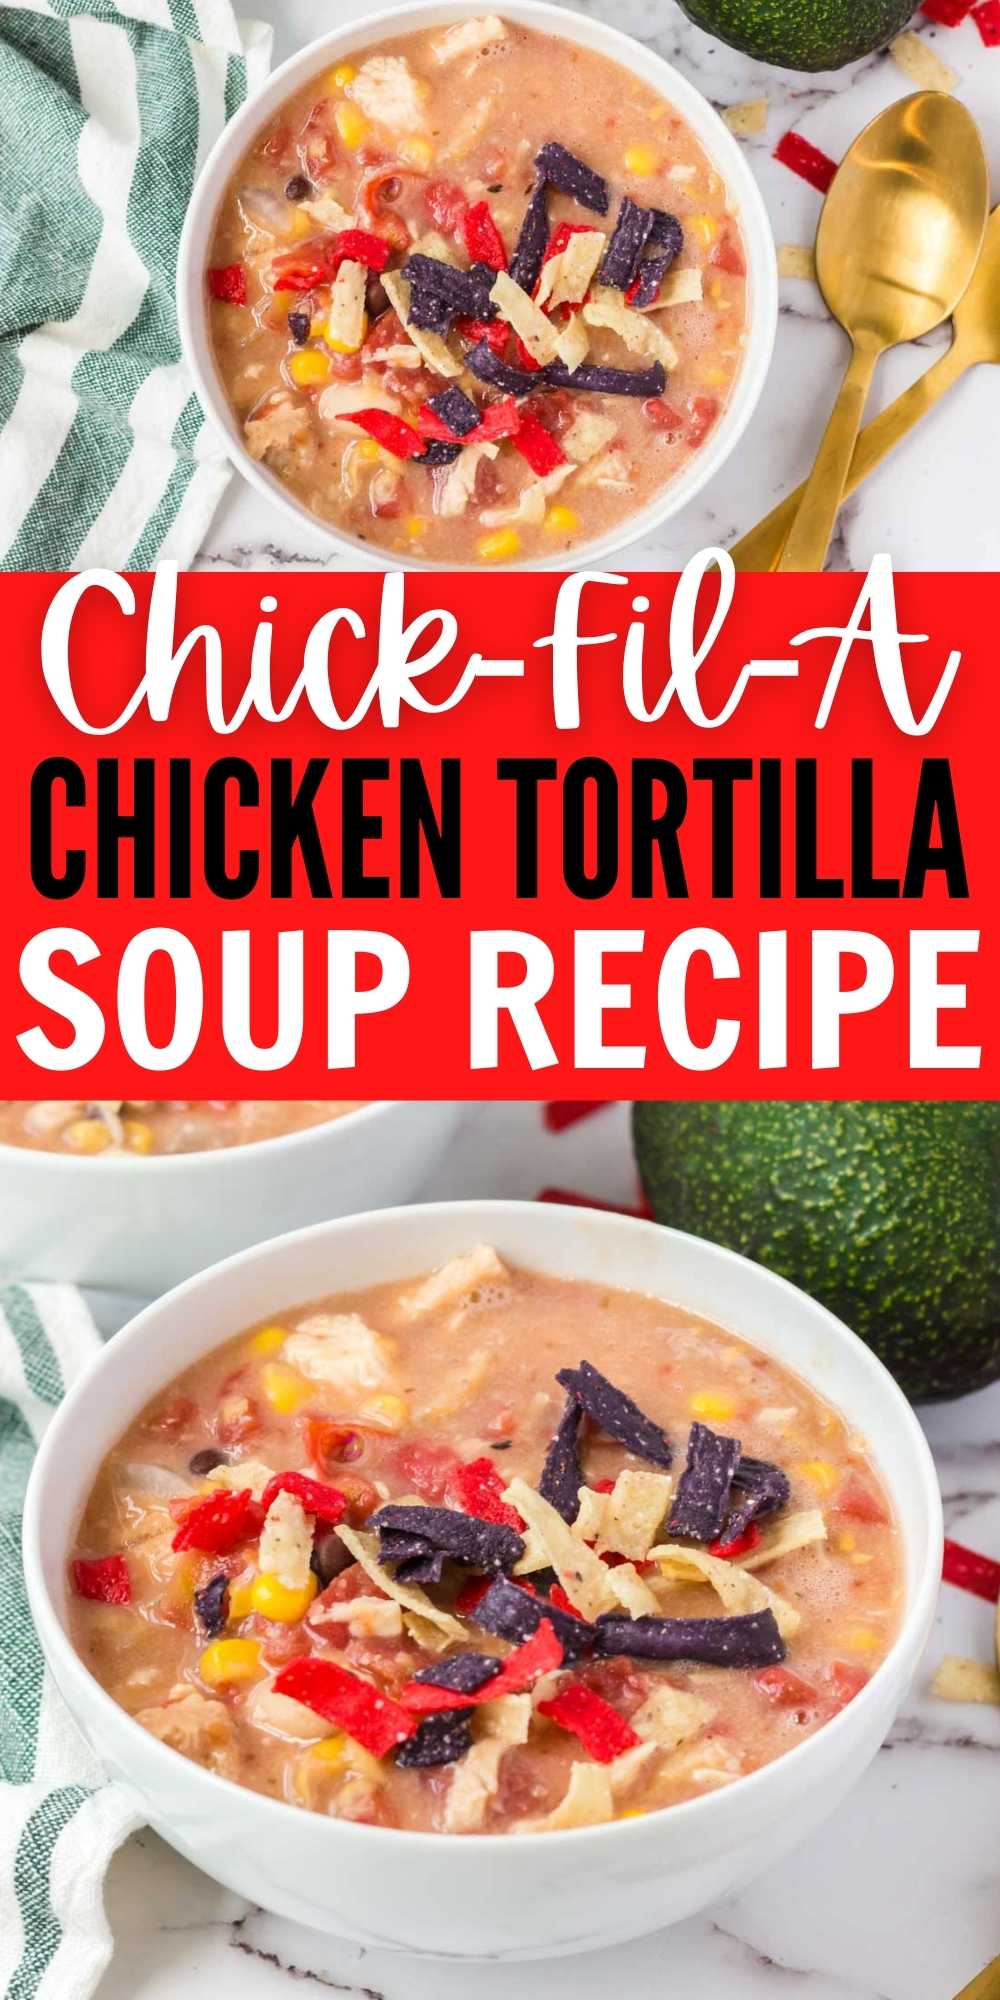 Chick-Fil-A Tortilla Soup - Plain Chicken